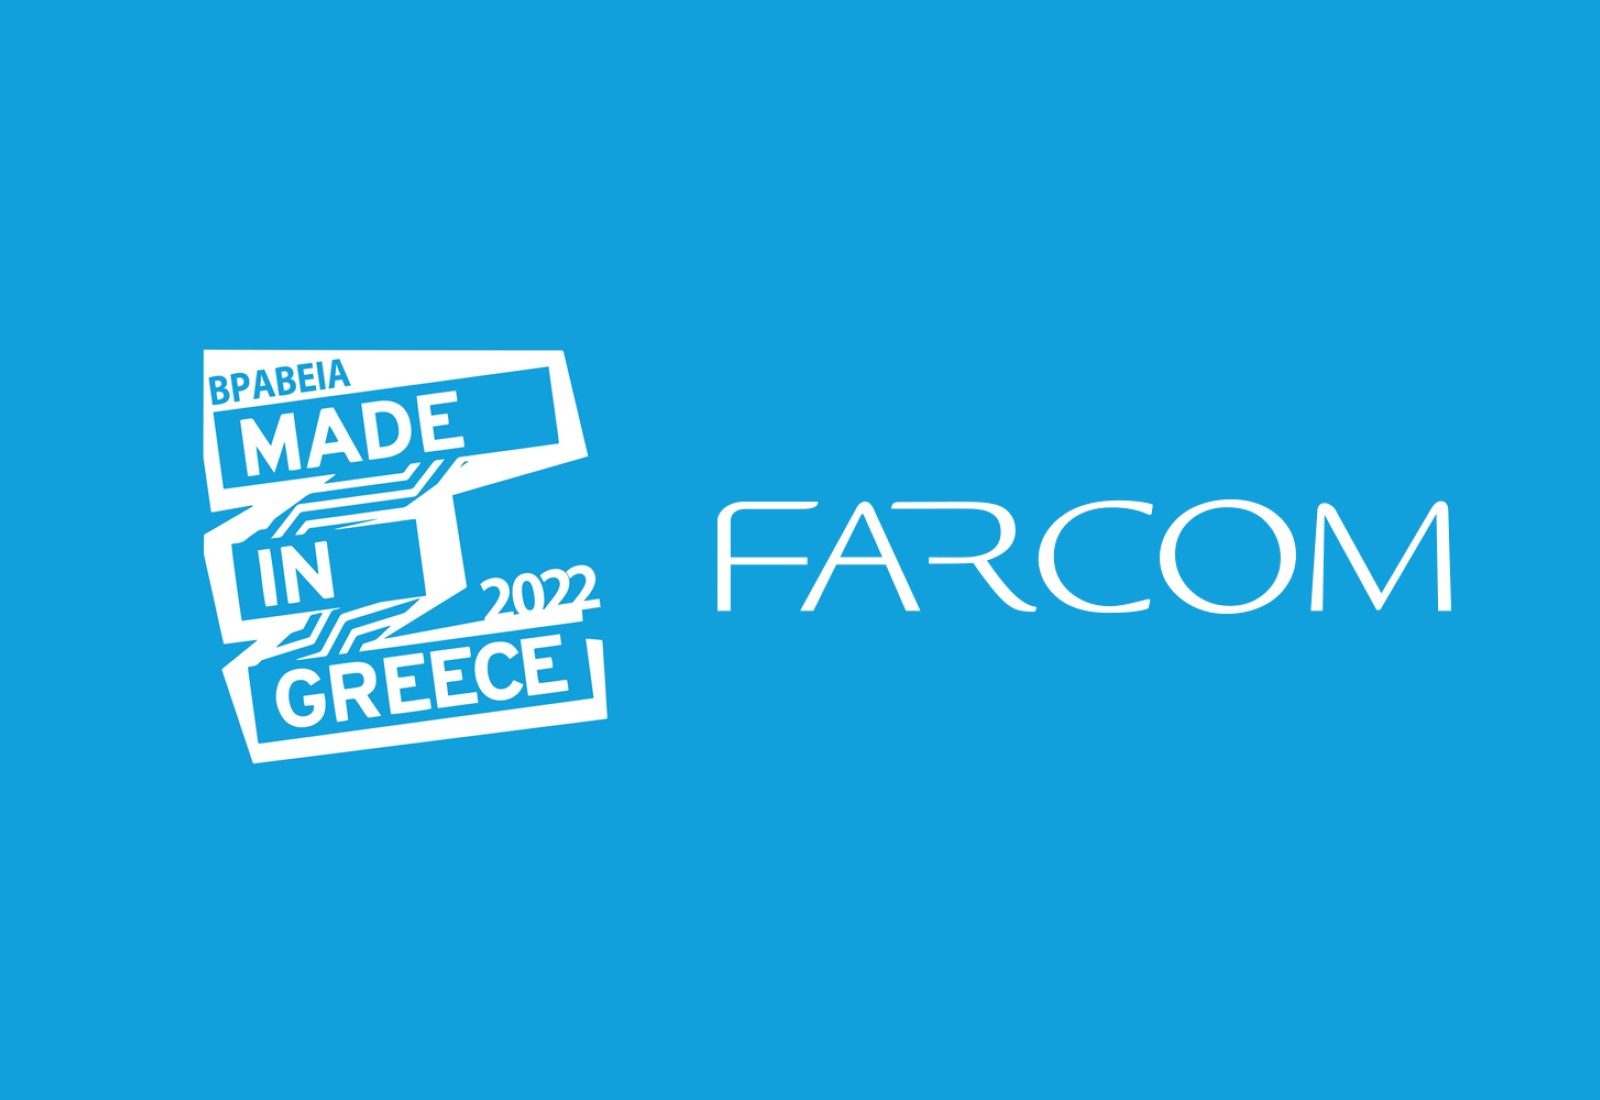 Νέες βραβεύσεις για τη Farcom στα “Made in Greece Awards 2022”